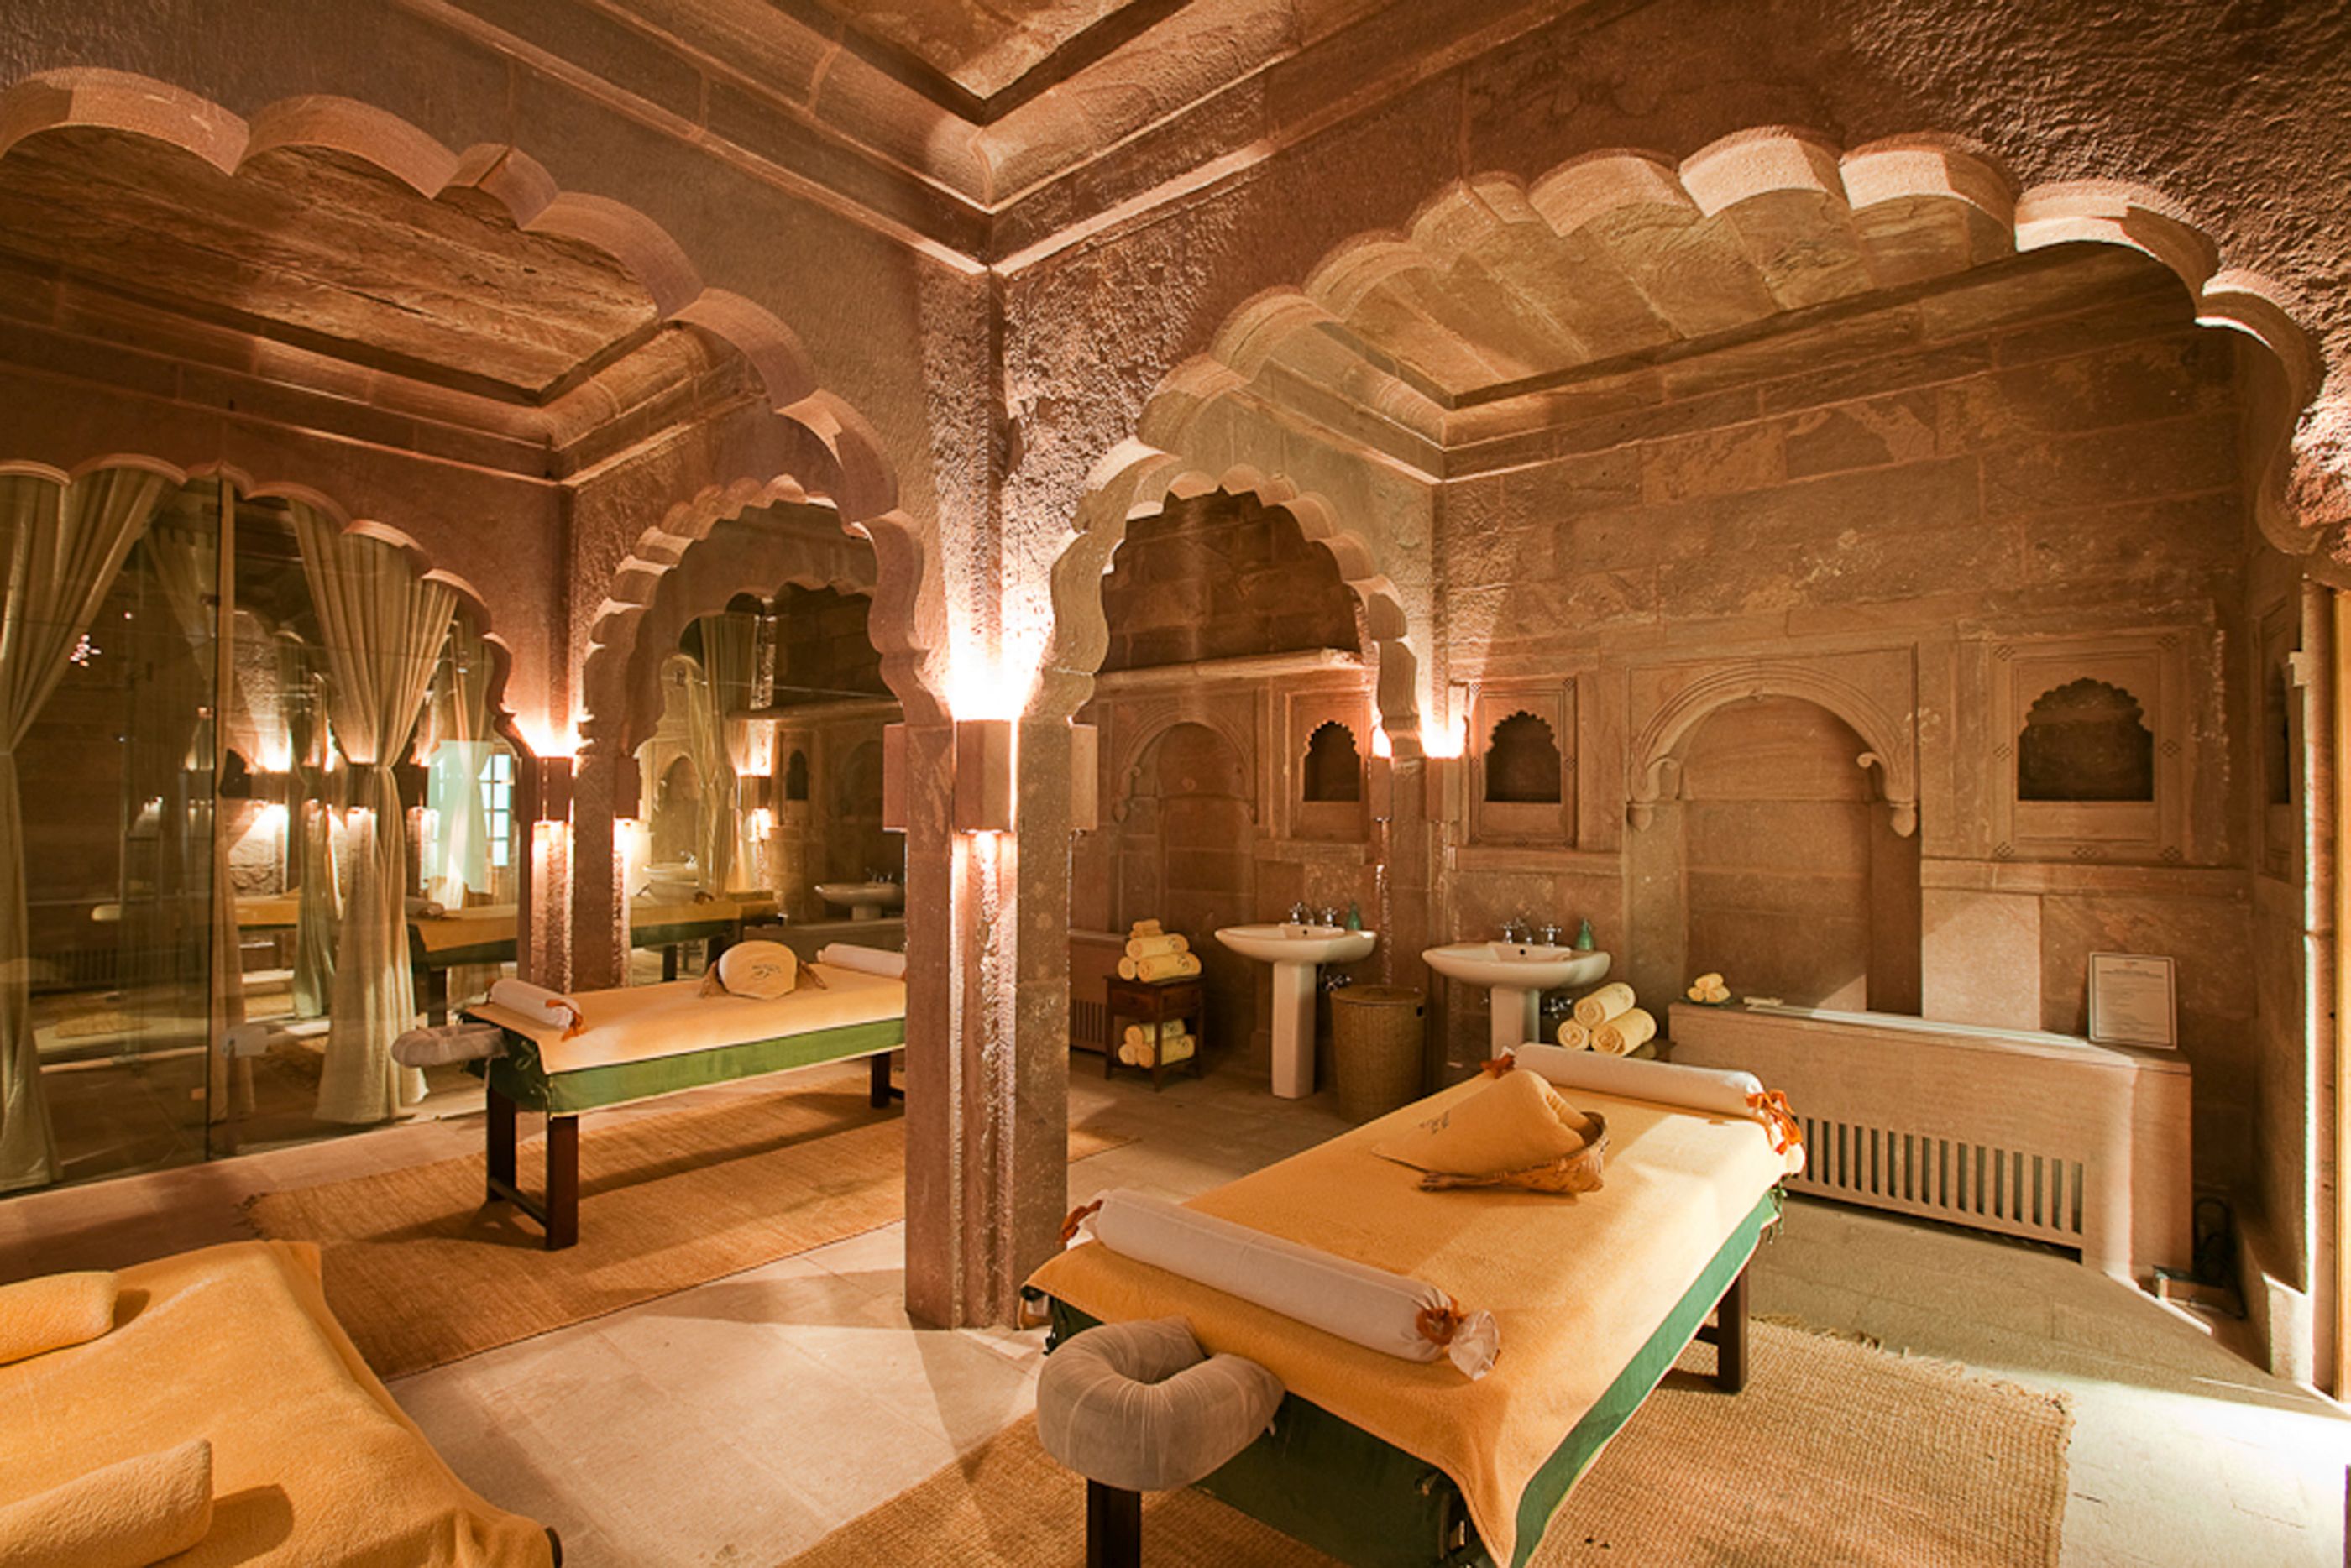 The spa at RAAS Jodhpur in India